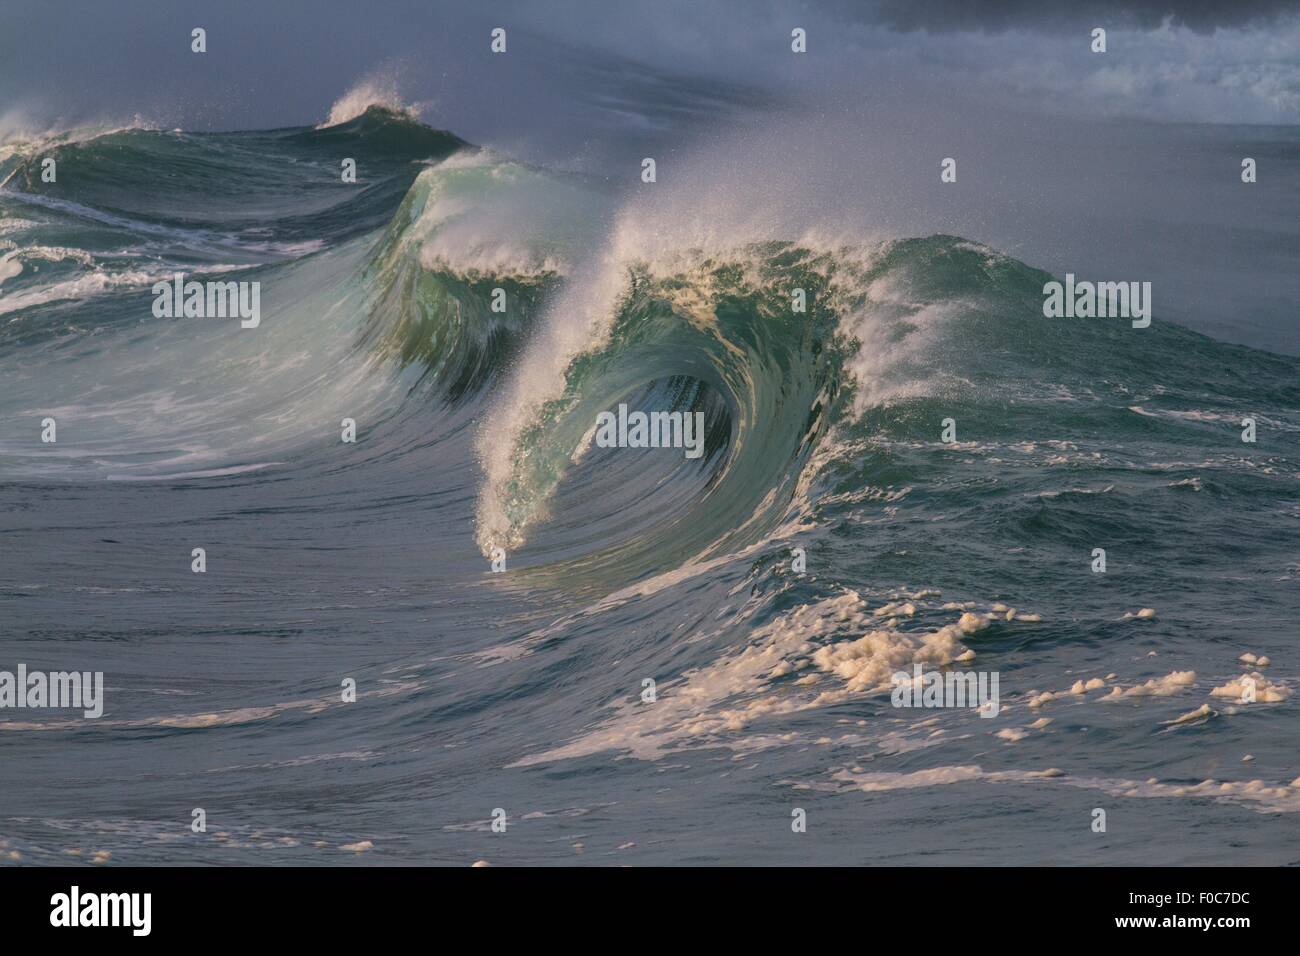 Breaking waves, Hawaii Stock Photo